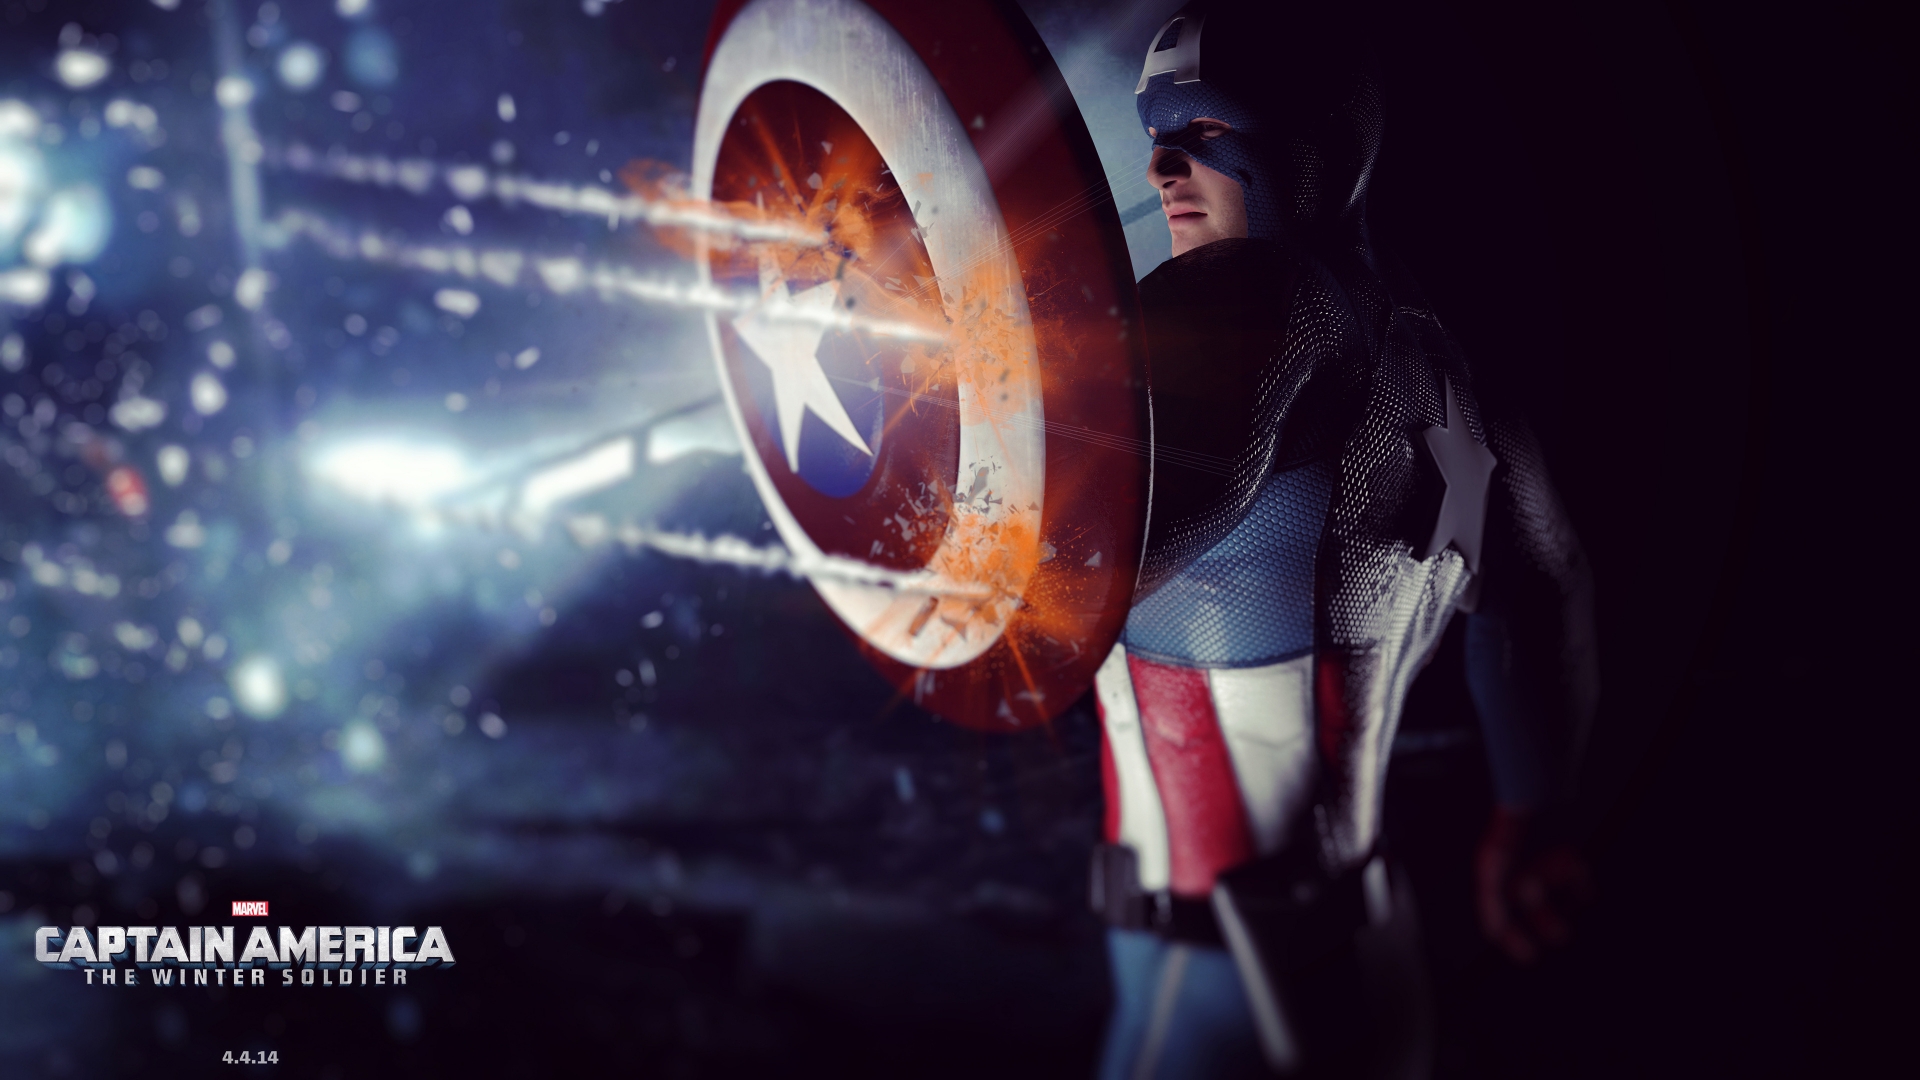 Captain America 2014 for 1920 x 1080 HDTV 1080p resolution